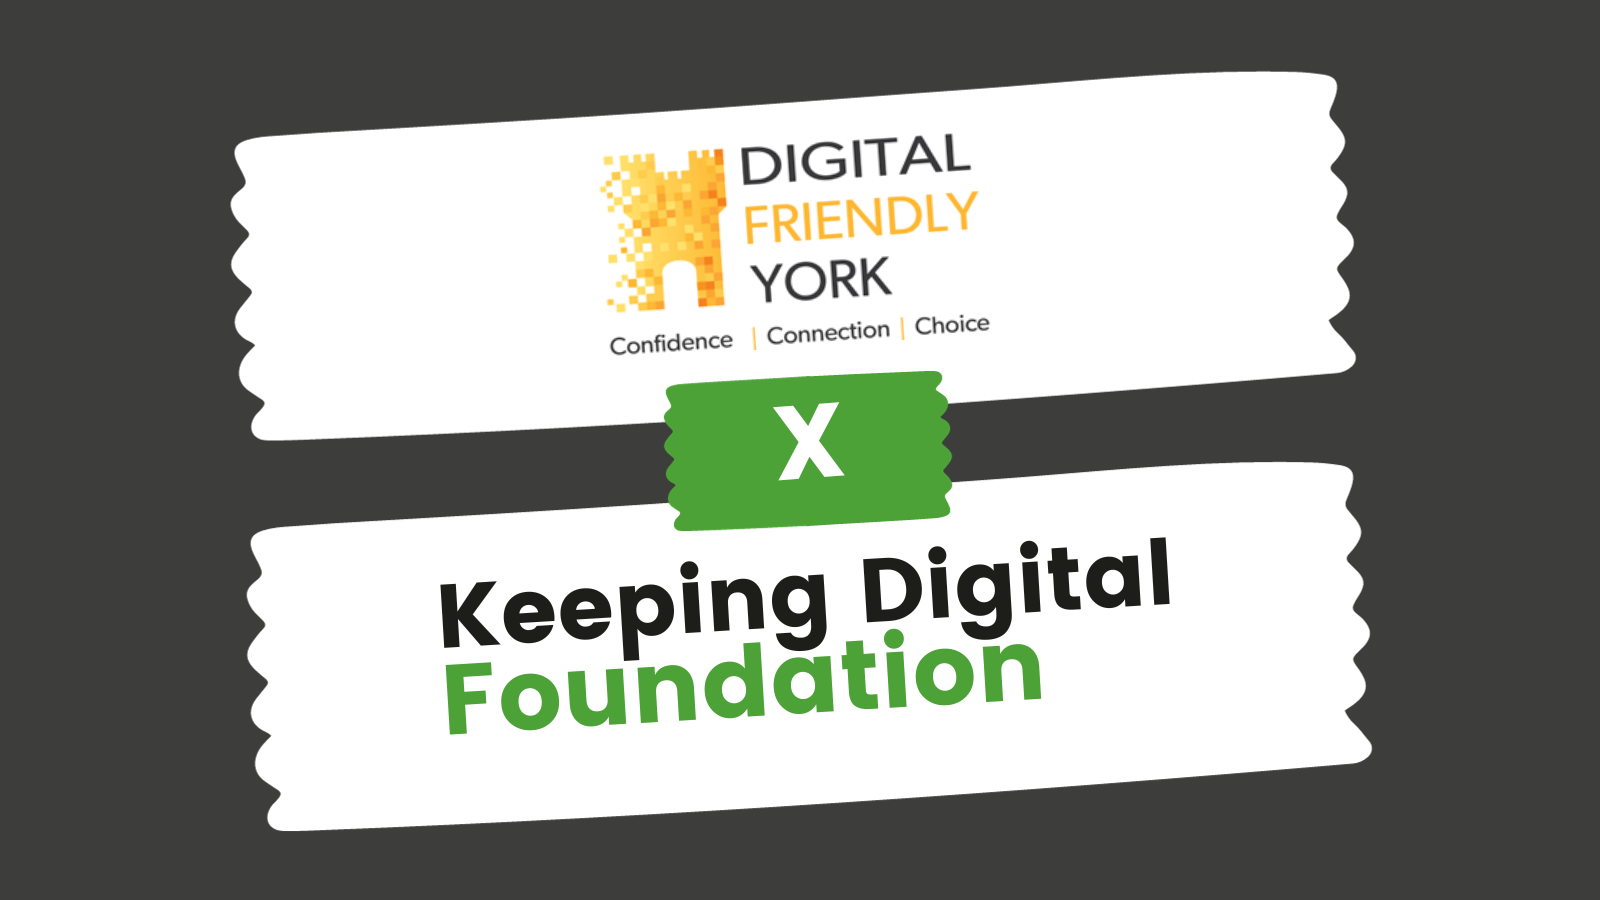 Digital Friendly York and Keeping Digital Foundation logo